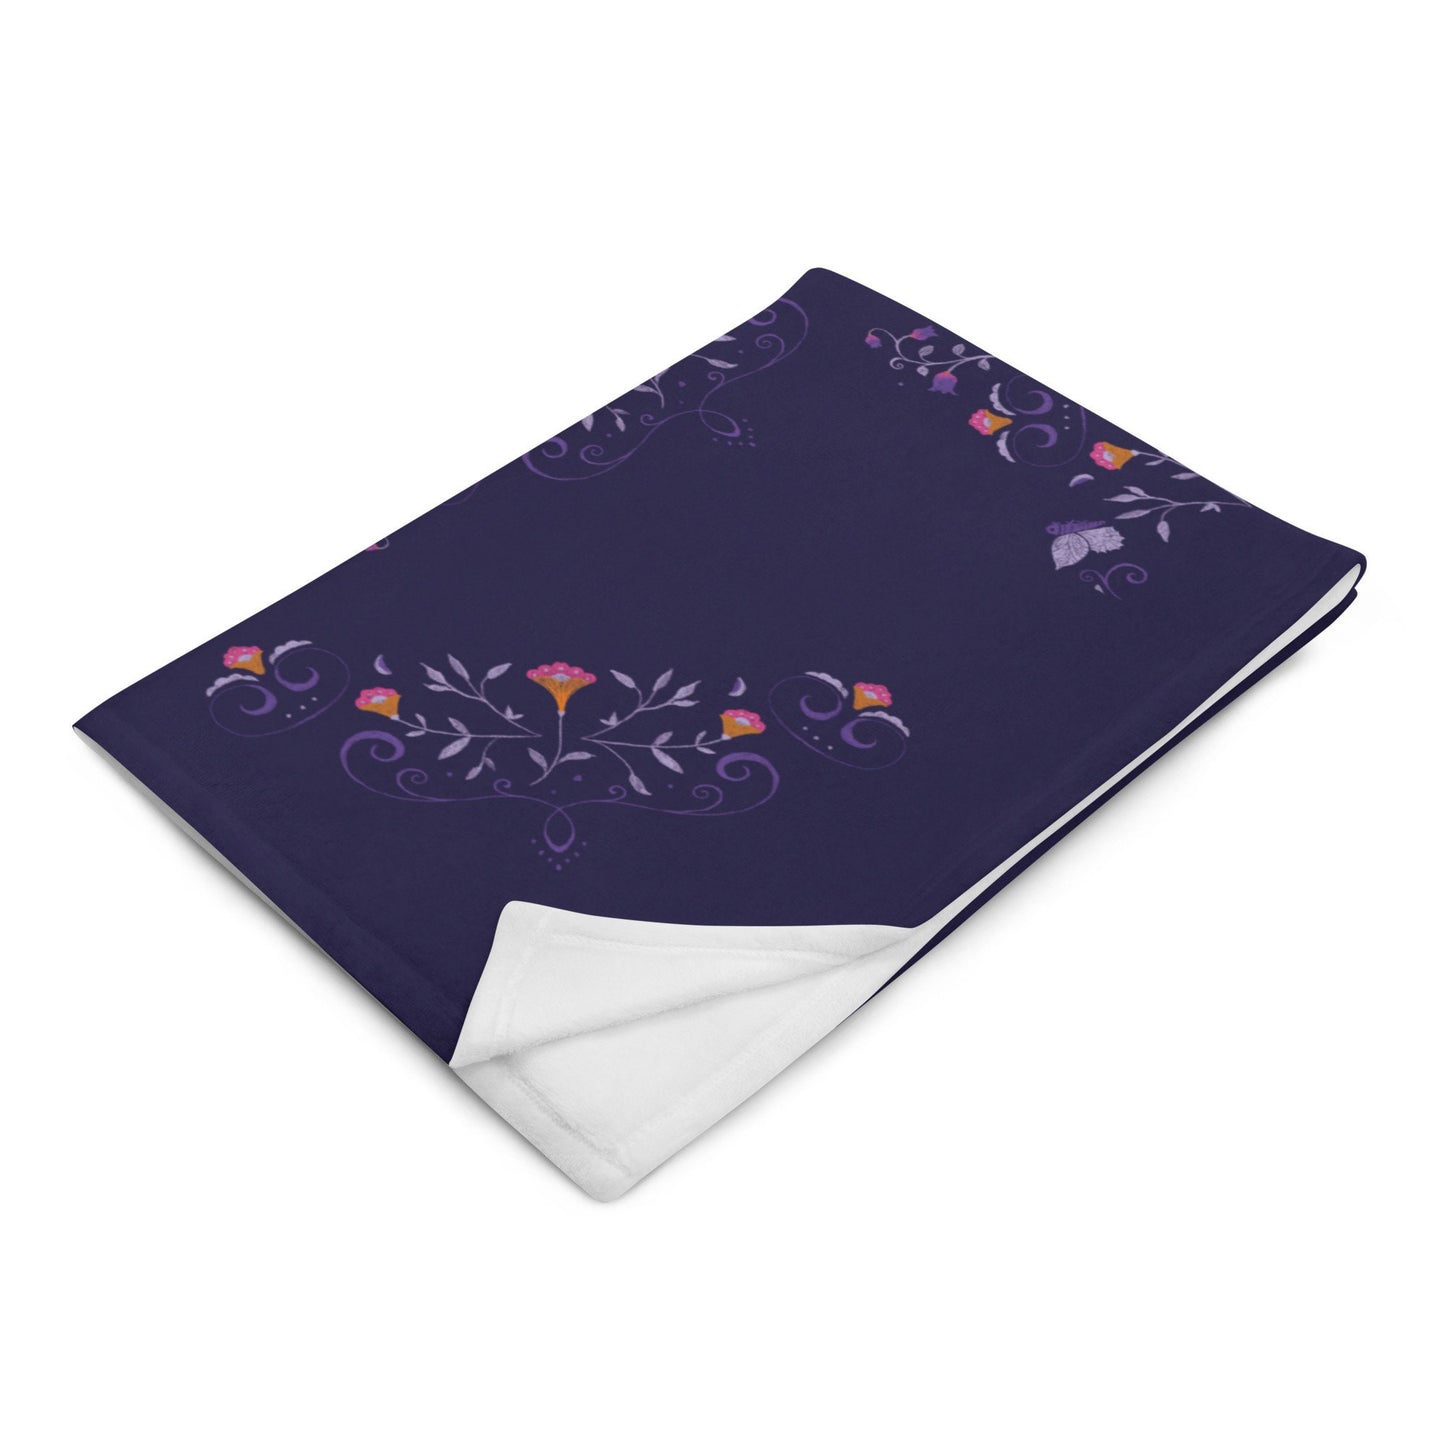 Blanket with flower pattern 'My Secret Garden' 127x153cm